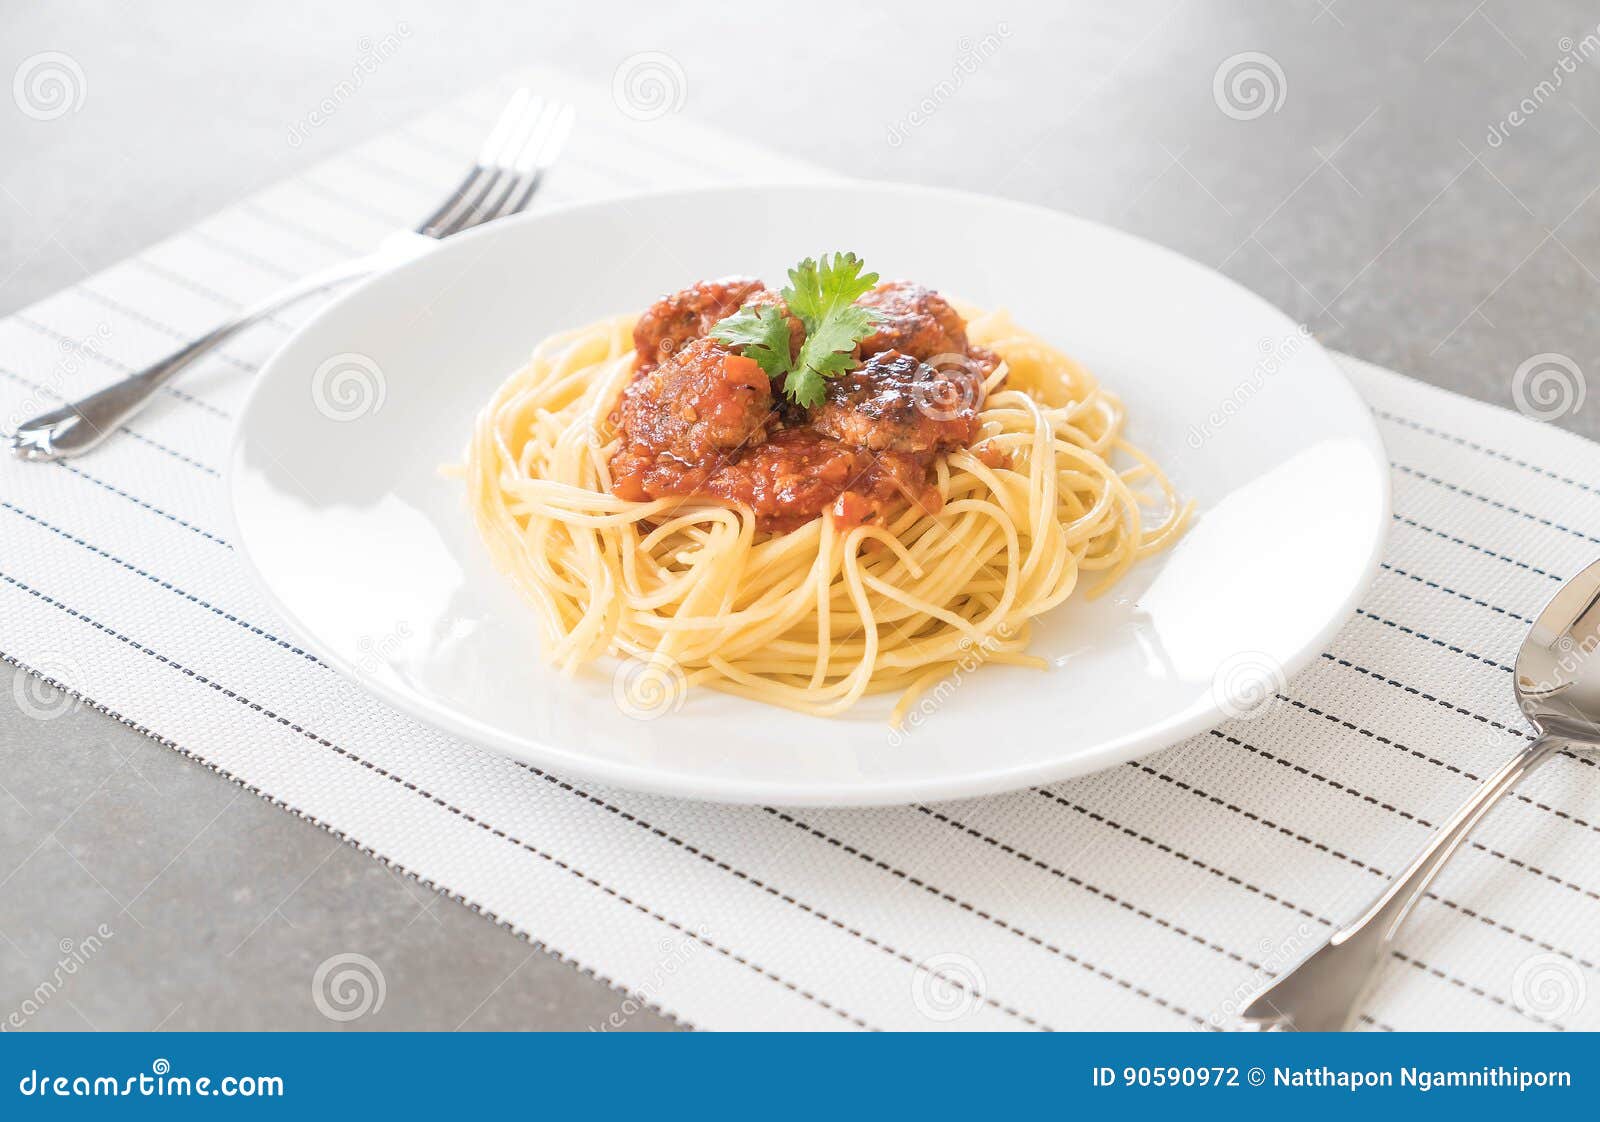 Лапша с котлетами. Спагетти с тефтелями. Паста болоньезе с фрикадельками. Спагетти с фрикадельками. Фрикадельки со спагетти.